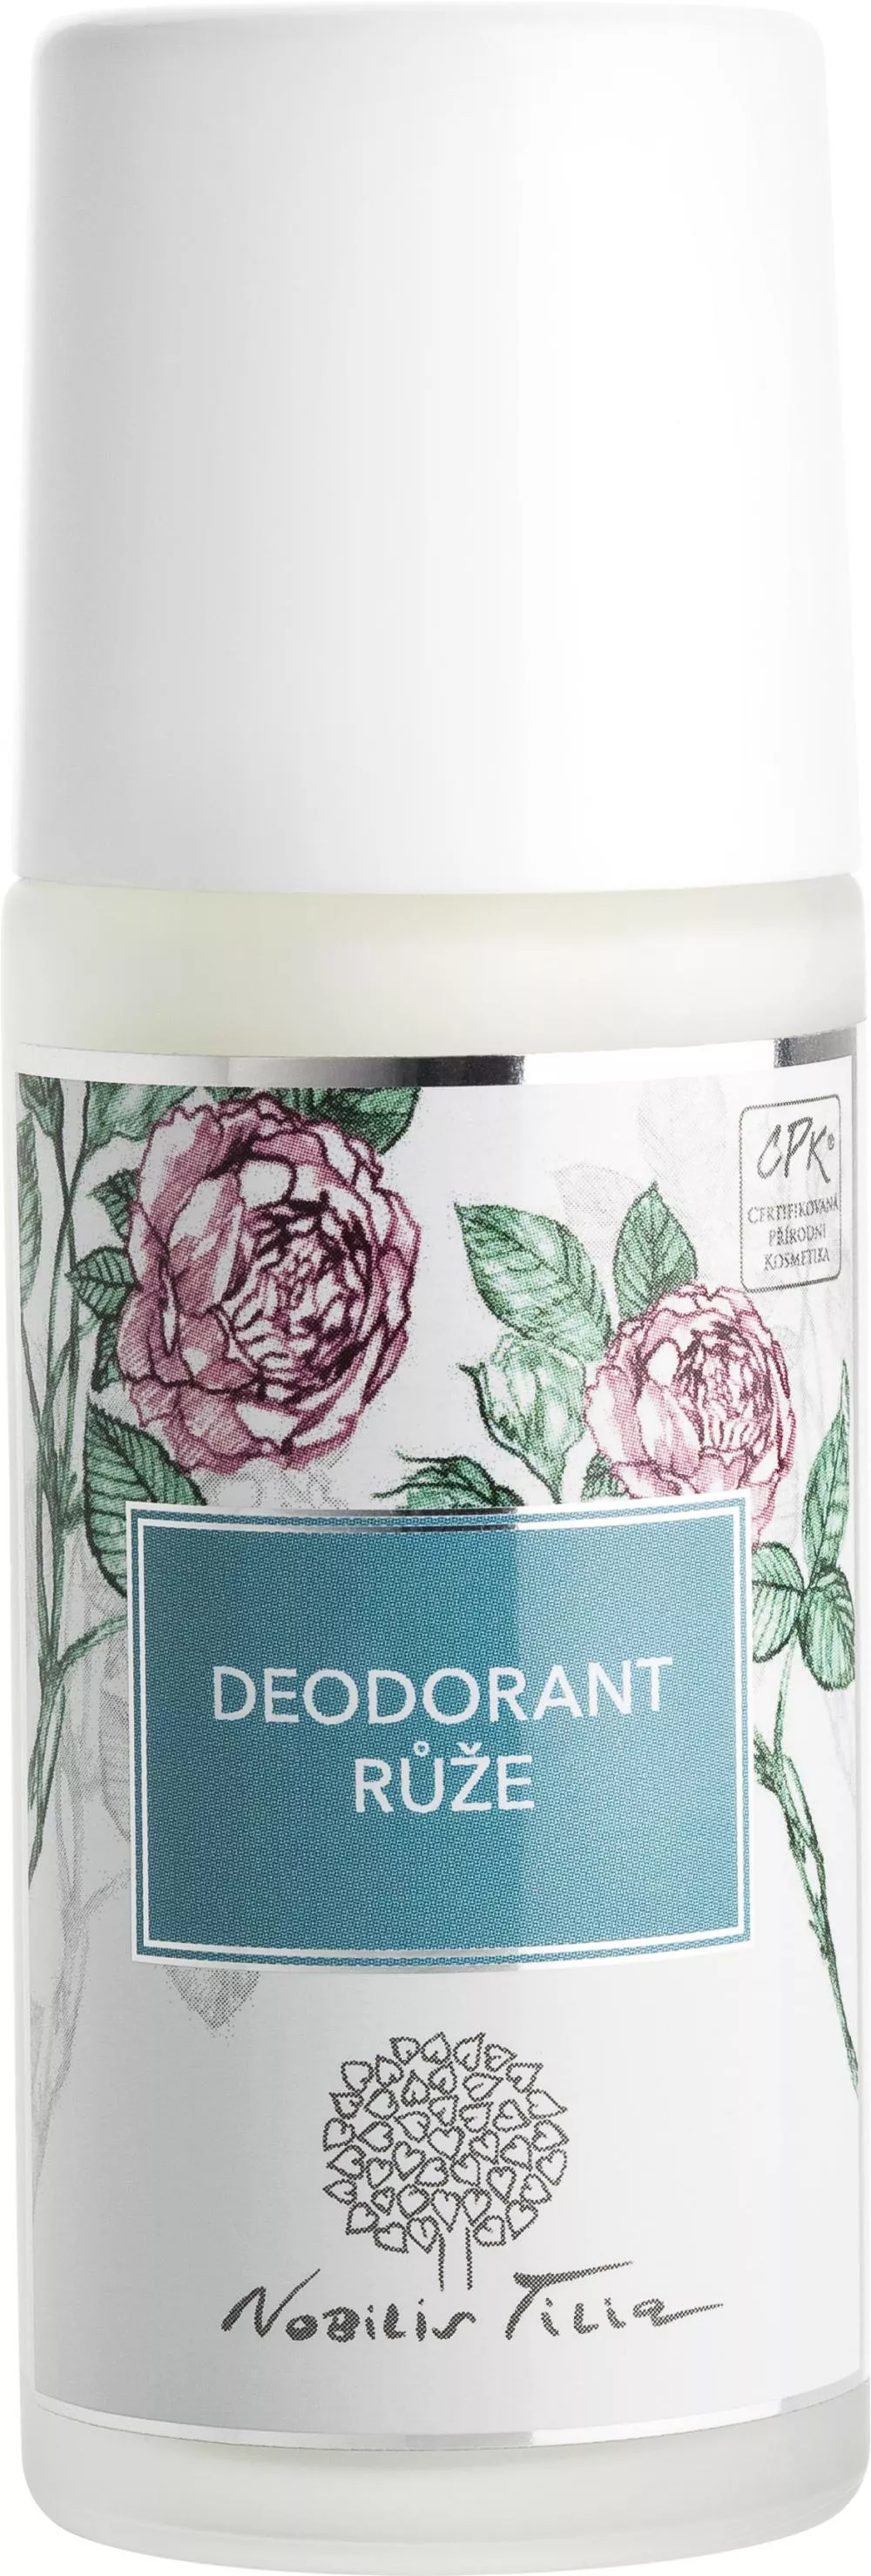 Nobilis Tilia Deodorant Rose 50ml